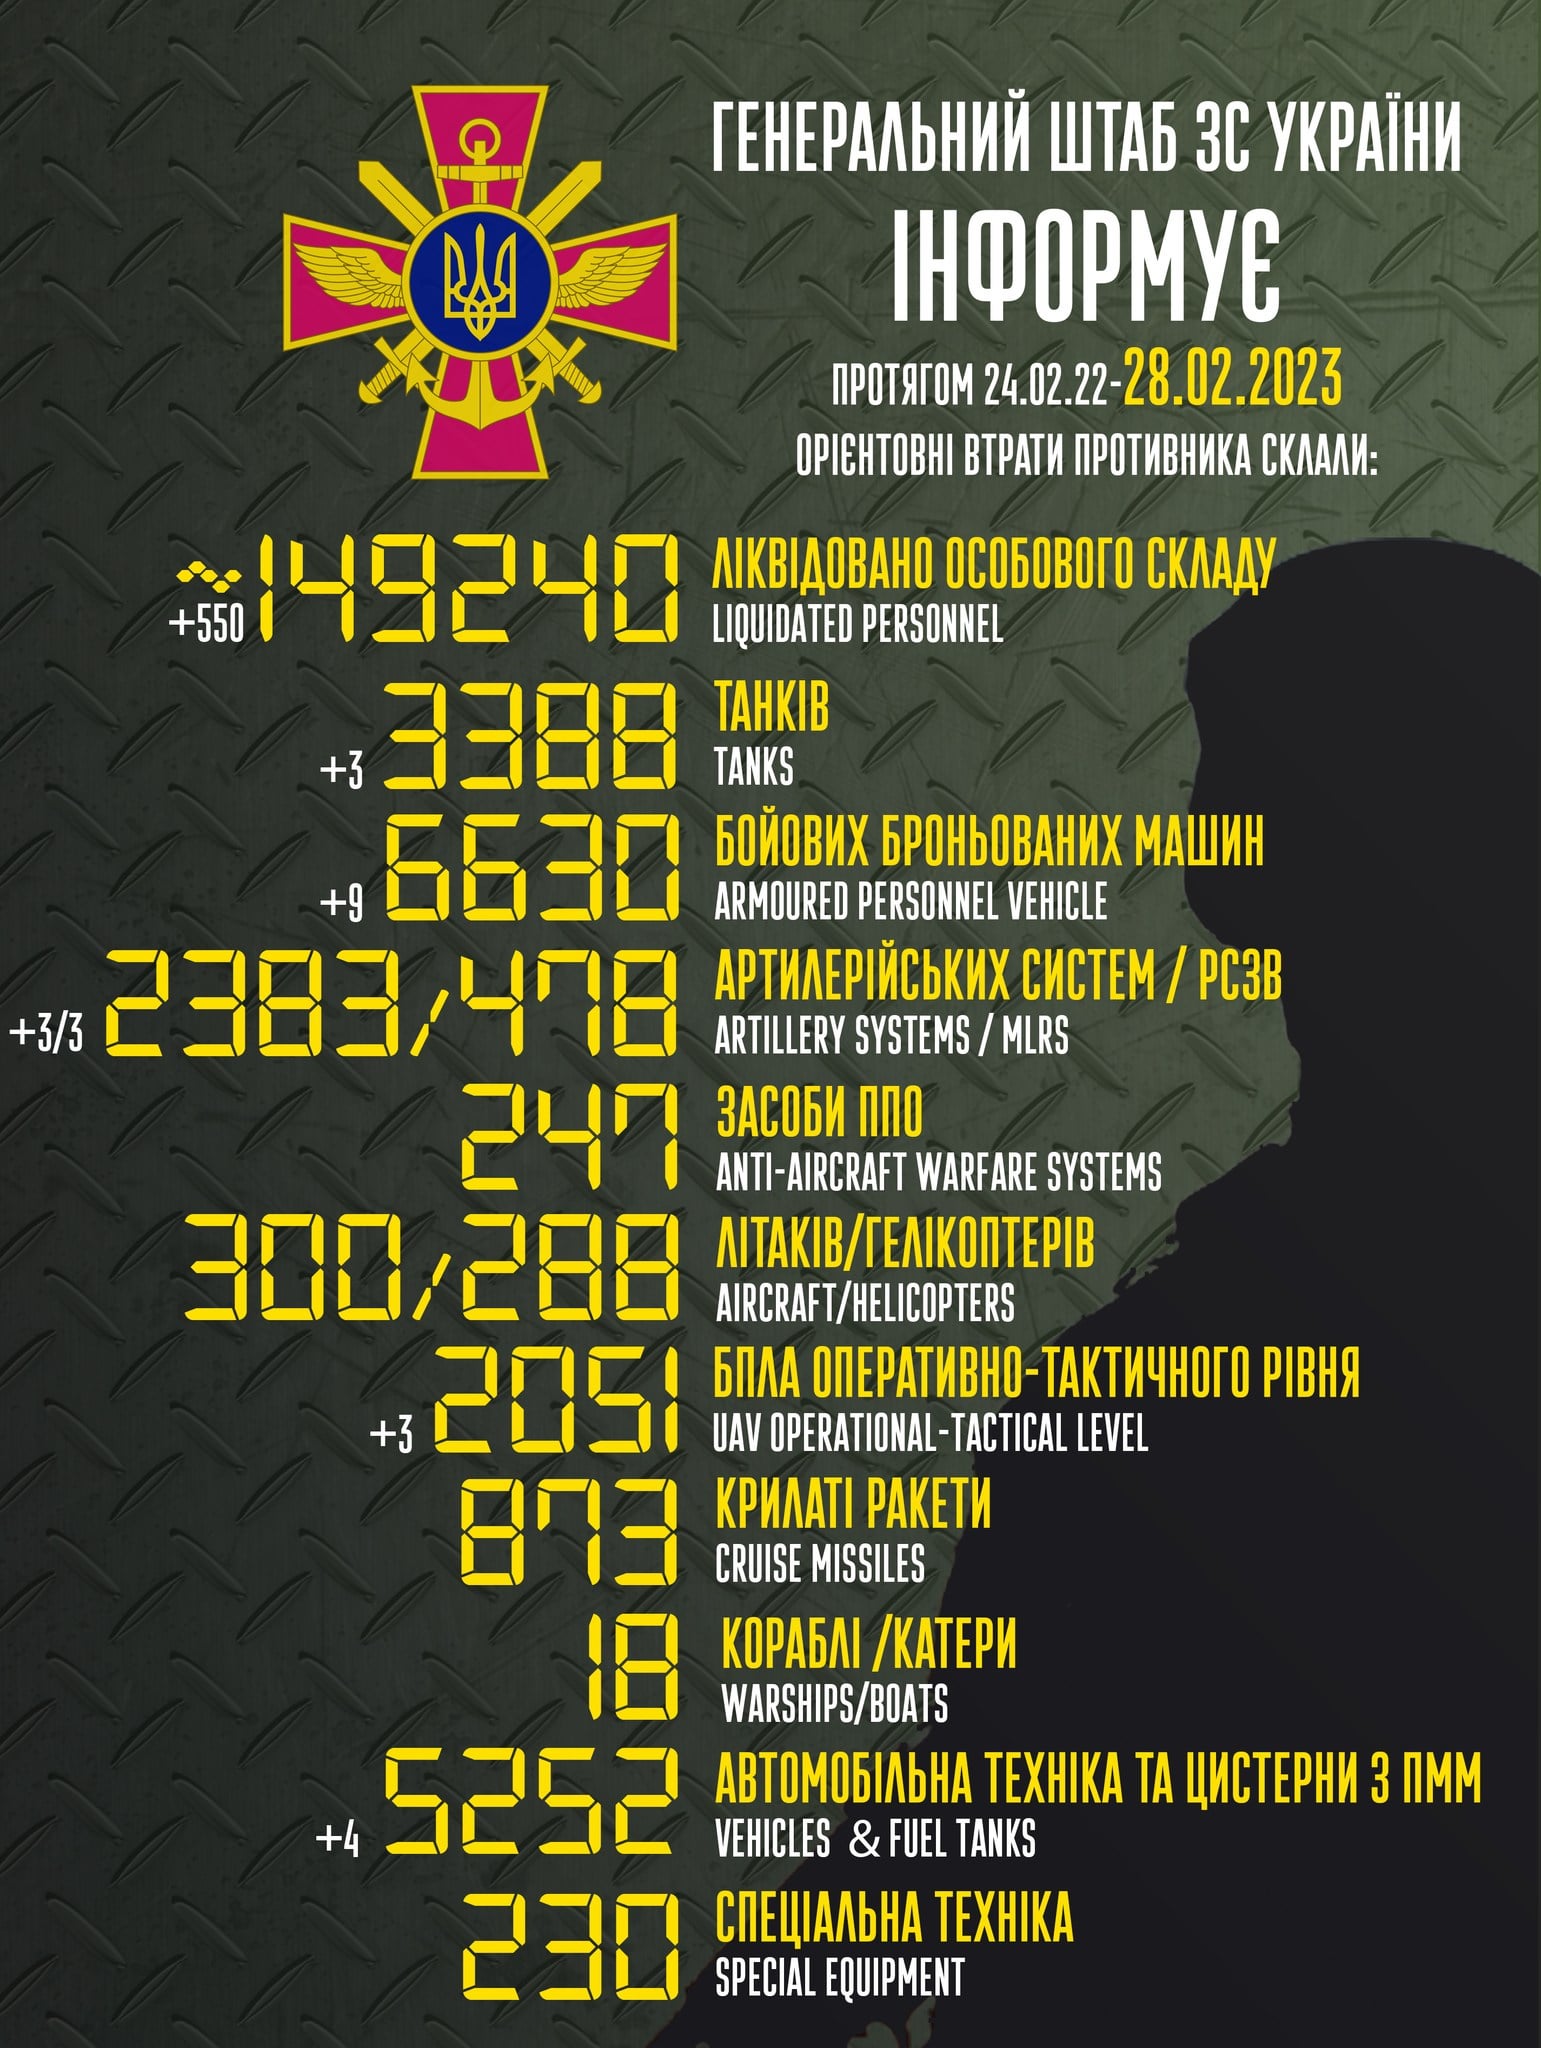 losses-of-the-russian-army-as-of-28-02-2023-v0-4mo280k69vka1.jpg